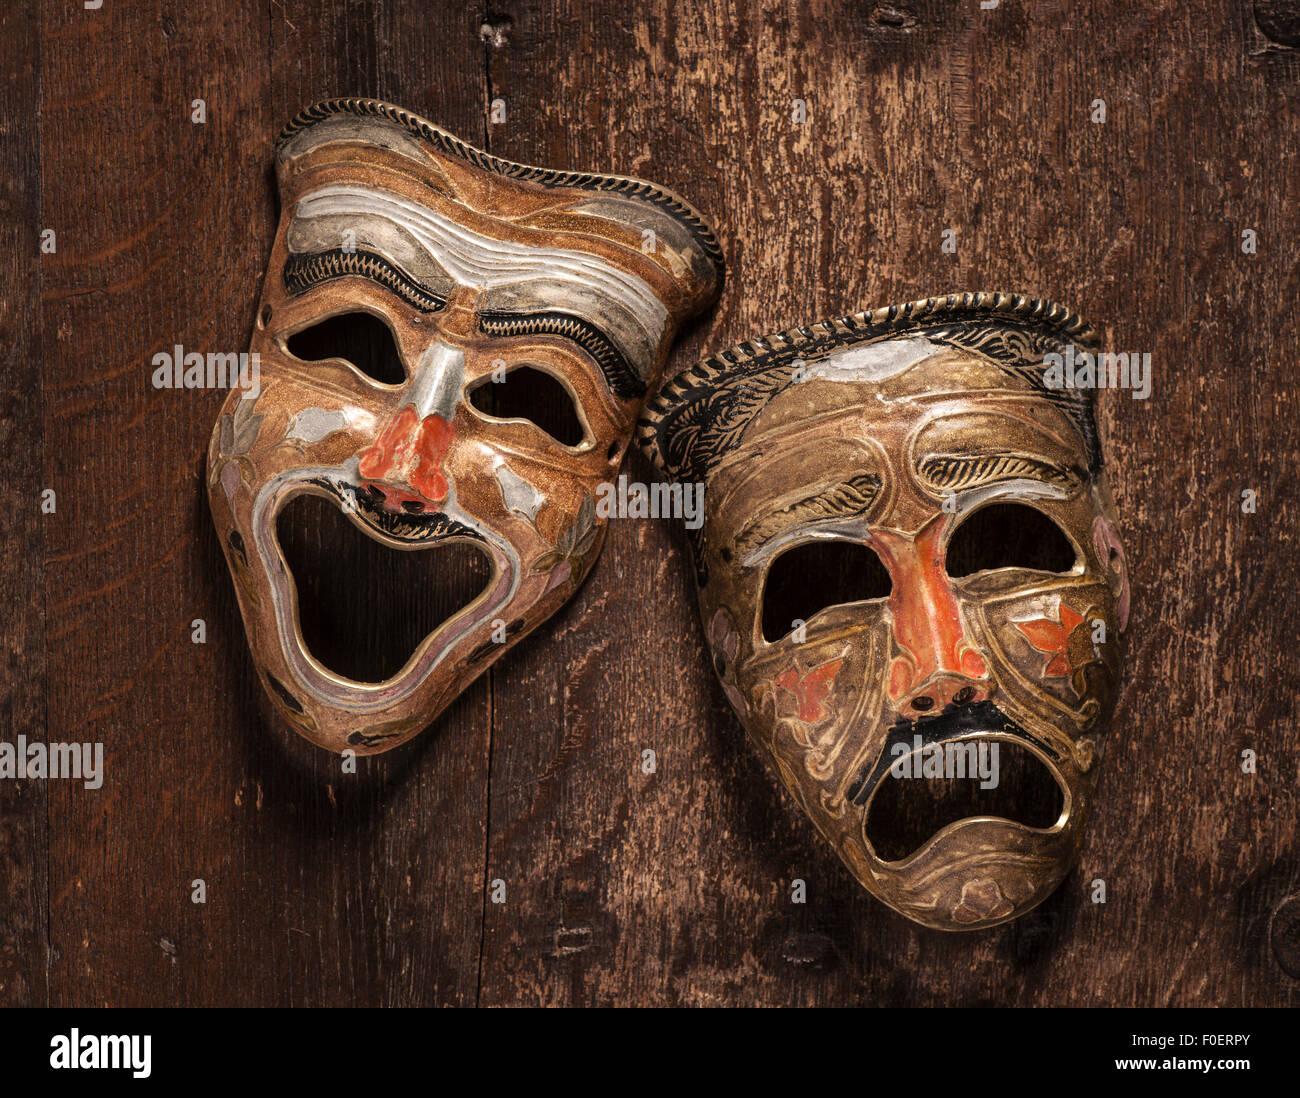 Les masques de la comédie et la tragédie se trouvant sur fond de bois. Still Life montrant l'émotion à travers le contraste de bonheur et de tristesse. Banque D'Images